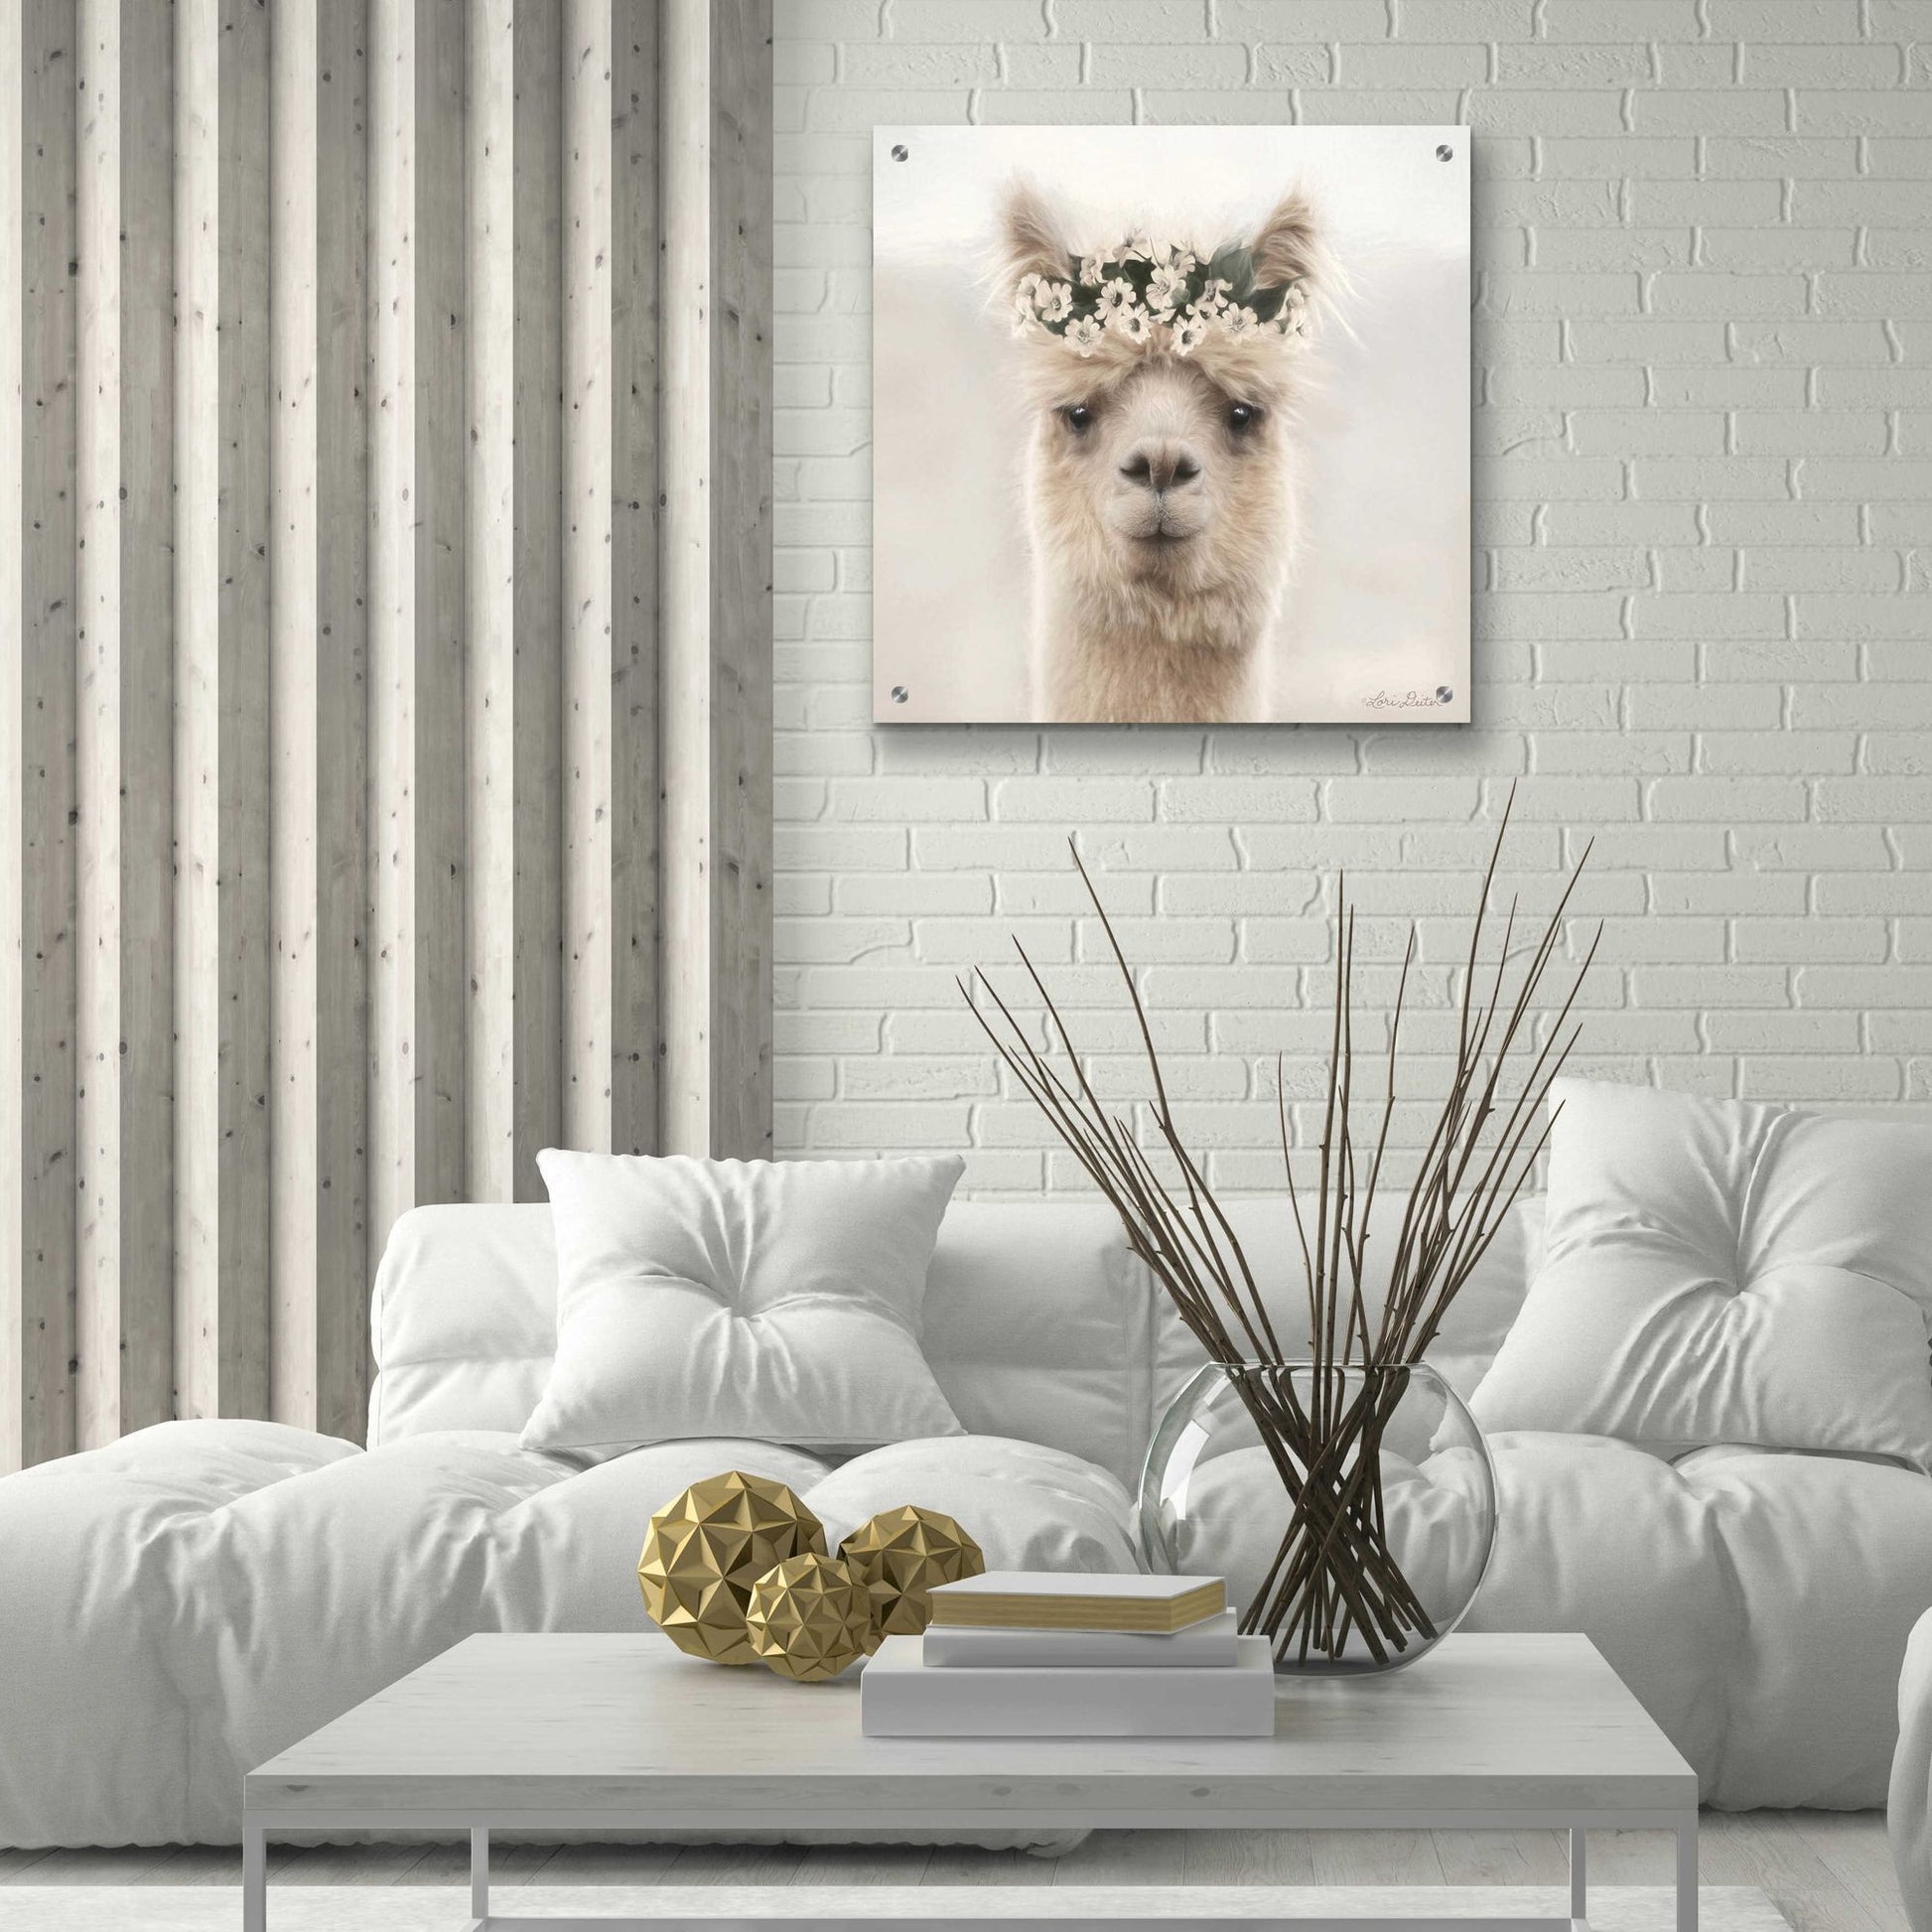 Epic Art 'Alpaca with Flowers' by Lori Deiter, Acrylic Glass Wall Art,24x24